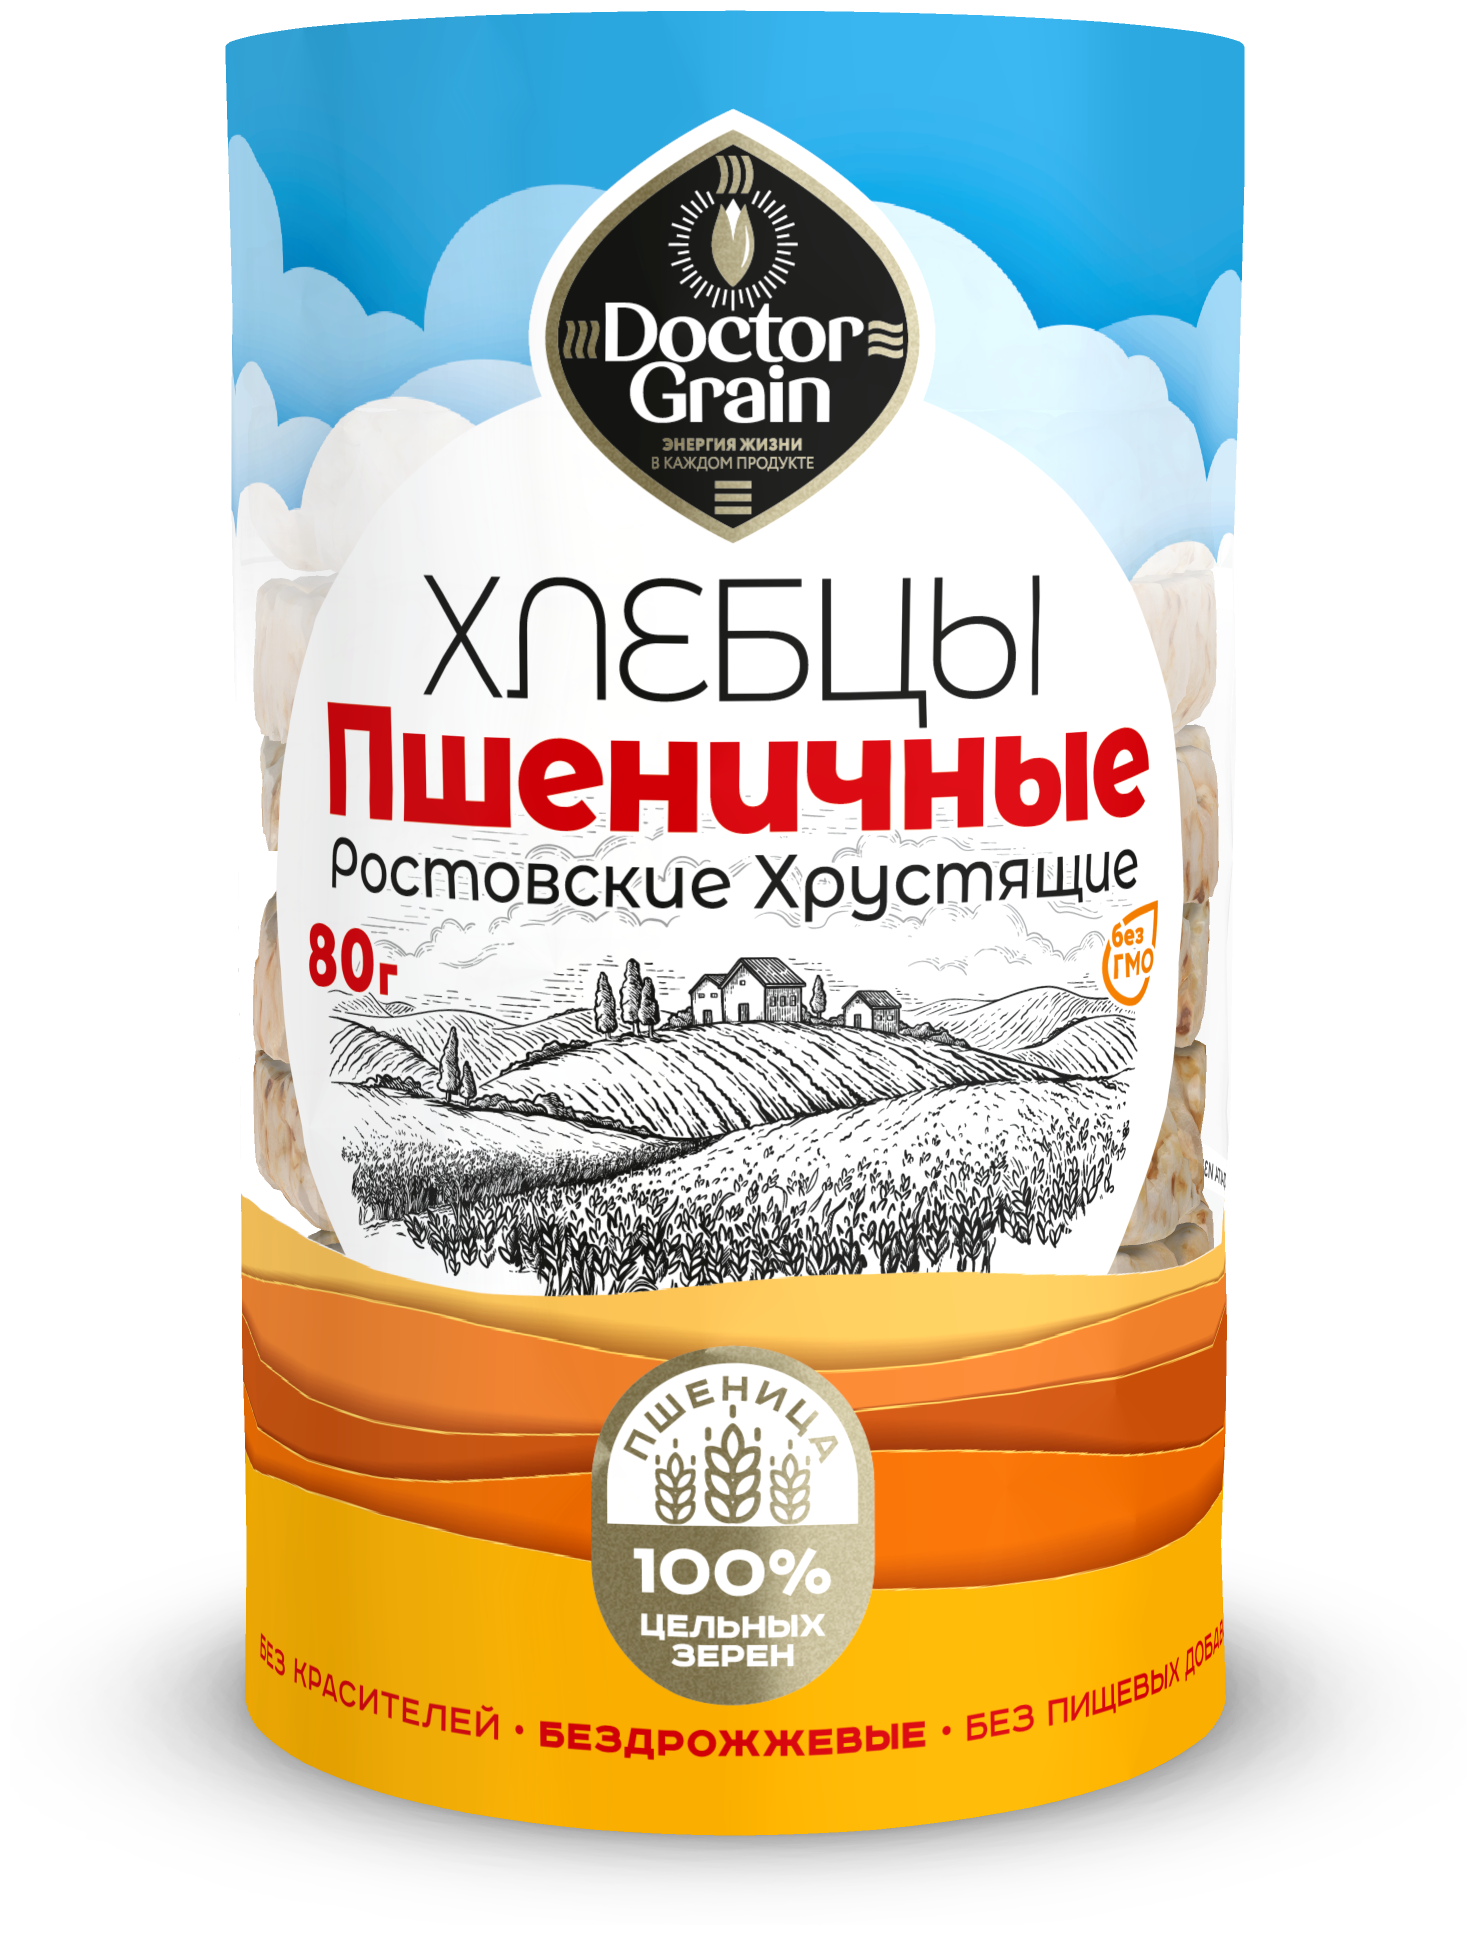 Хлебцы Доктор Граин Ростовские Пшеничные цельнозерновые 80г, здоровый перекус